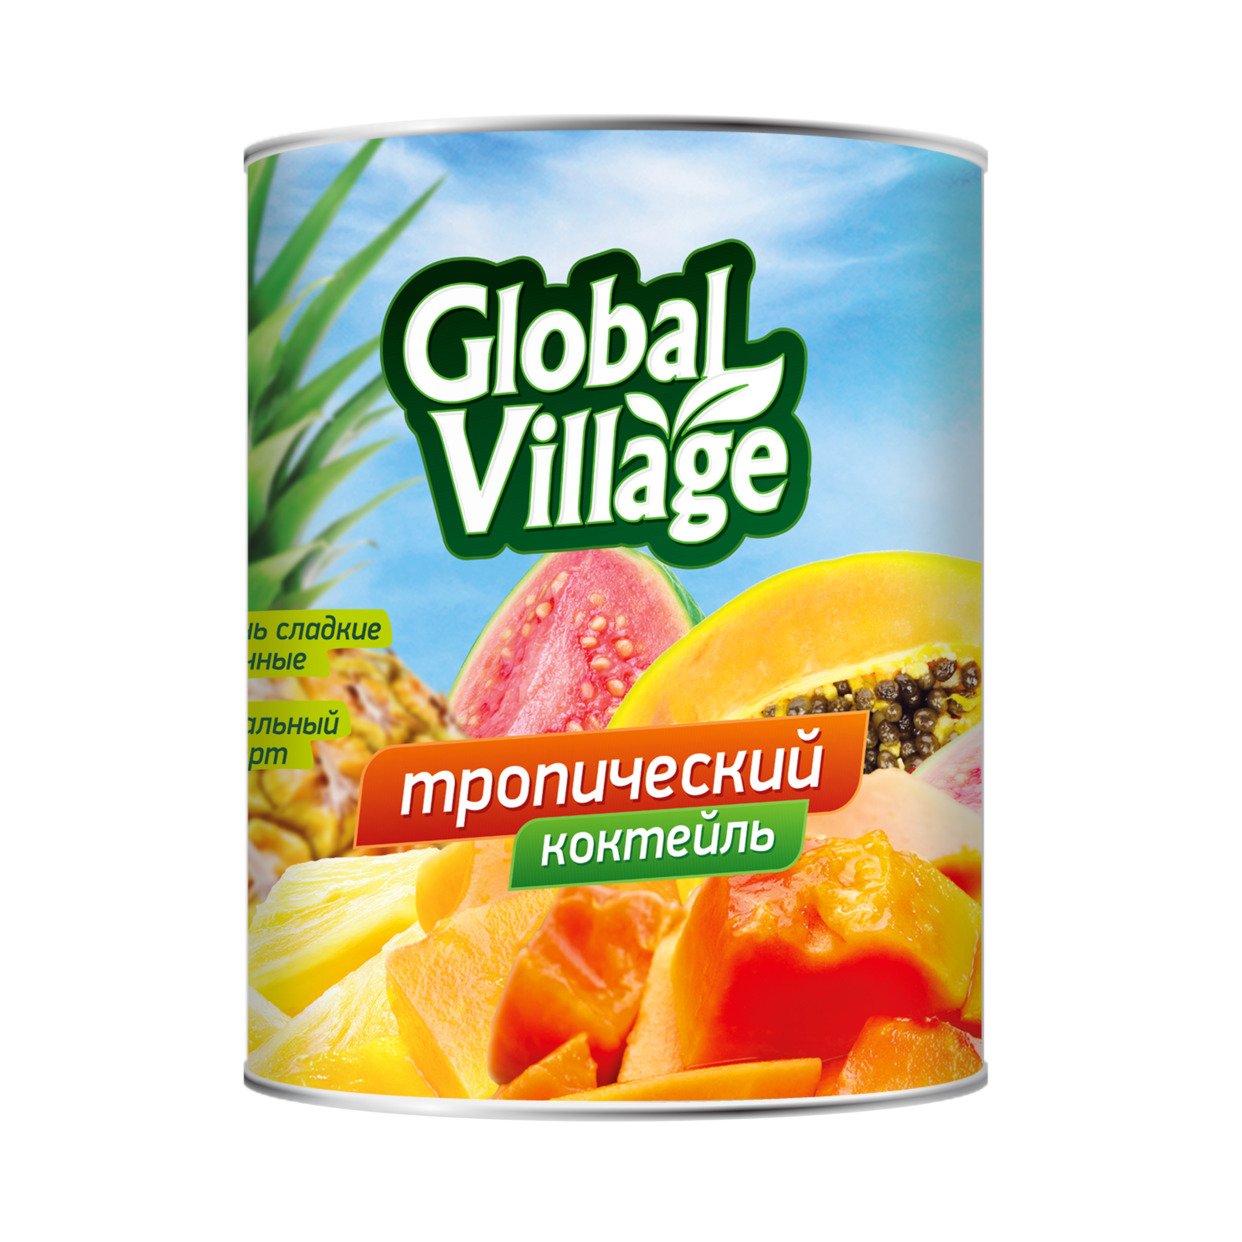 Акция в Пятерочке на Консервы фруктовые пастеризованные: «Коктейль тропический» в легком сиропе, торговой марки «Global Village», 565г